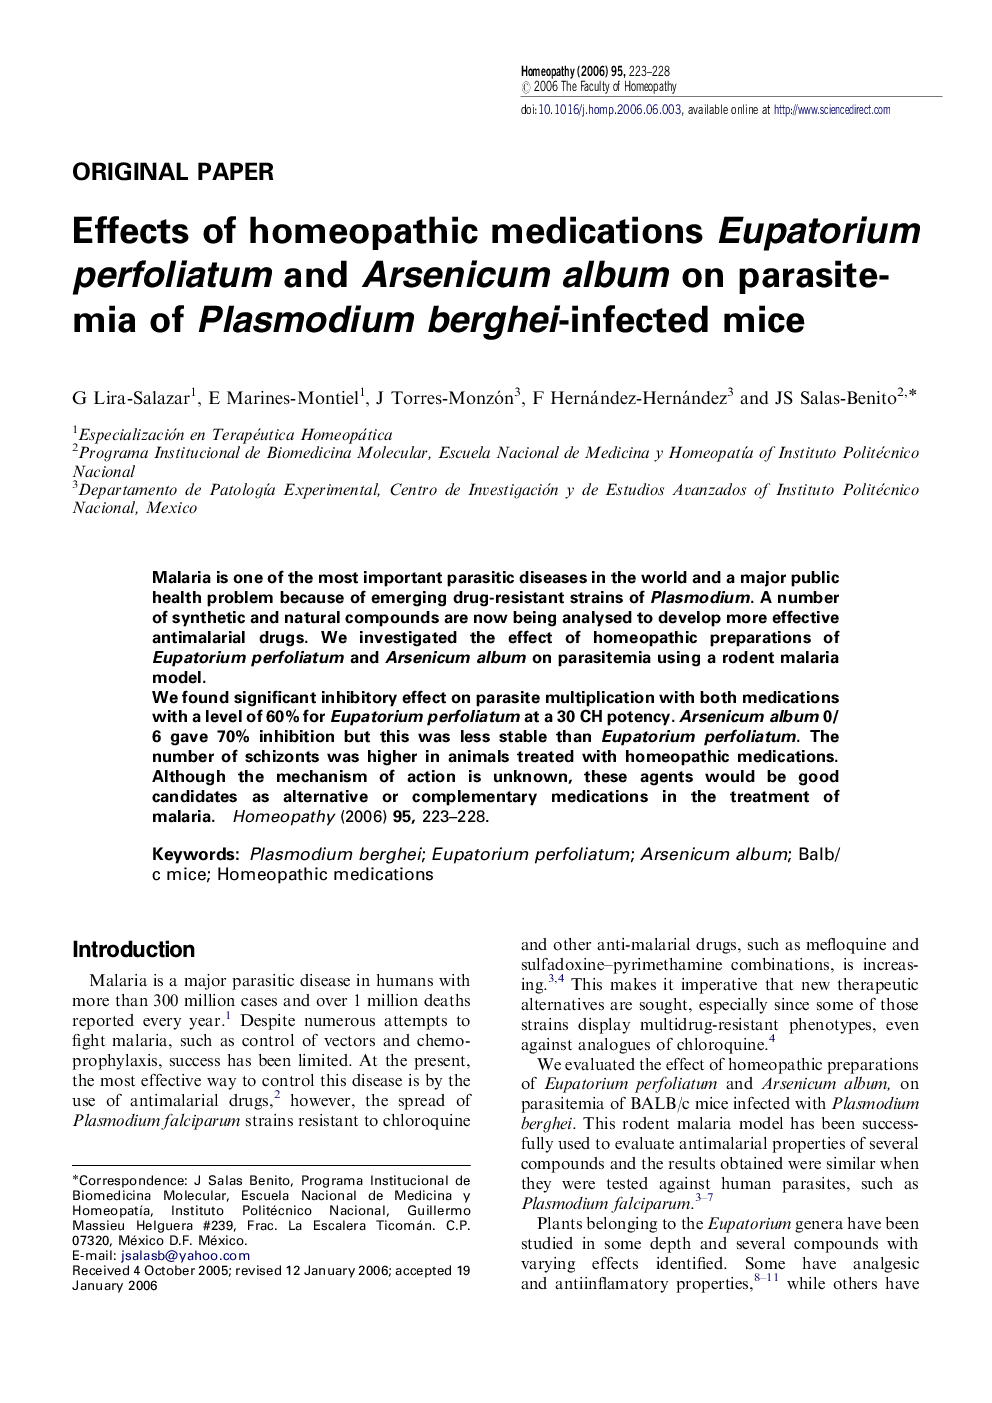 Effects of homeopathic medications Eupatorium perfoliatum and Arsenicum album on parasitemia of Plasmodium berghei-infected mice